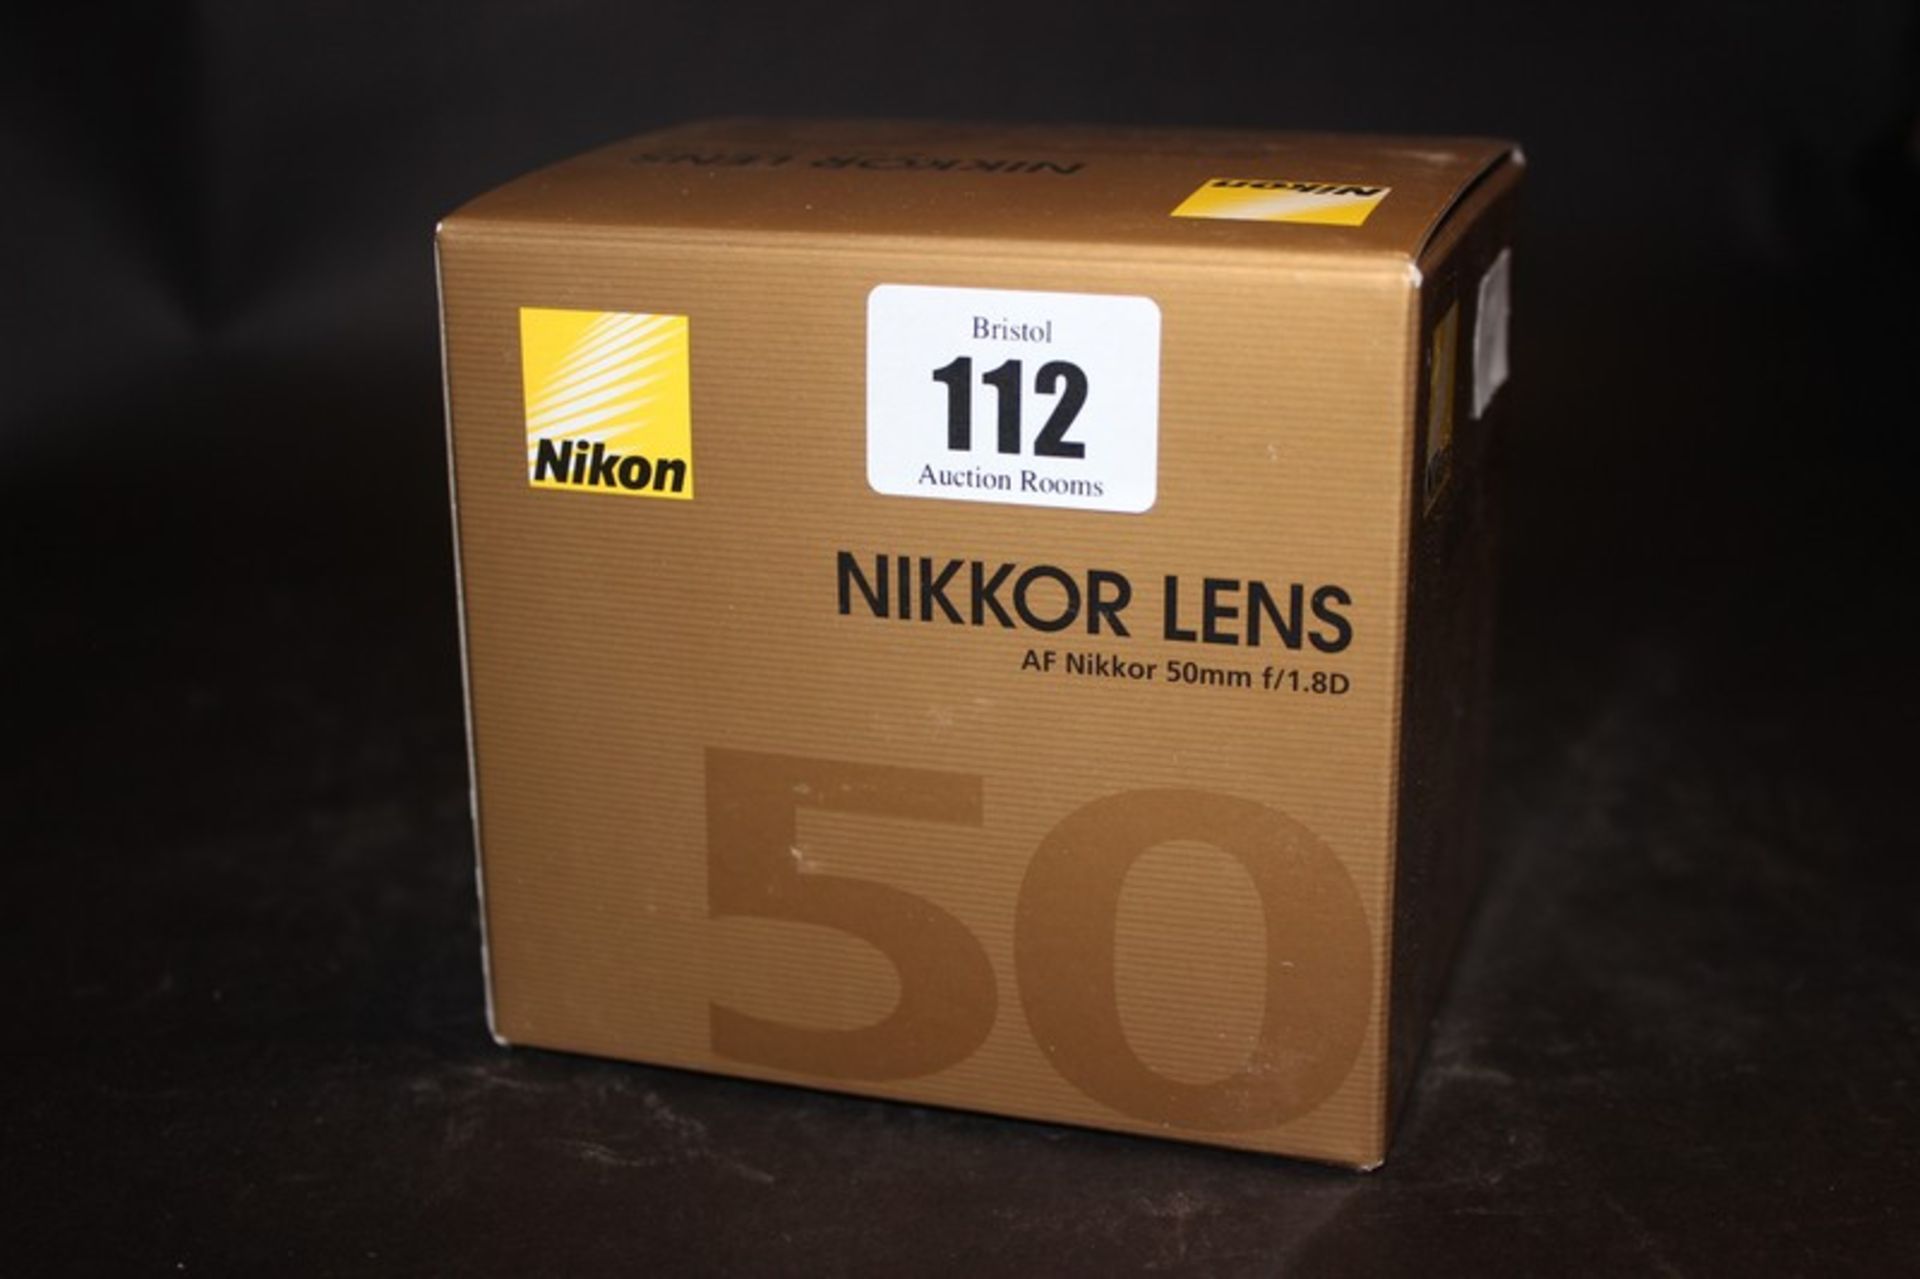 A Nikon Nikkor Lens AF Nikkor 50mm f/1.8D (Boxed as new).